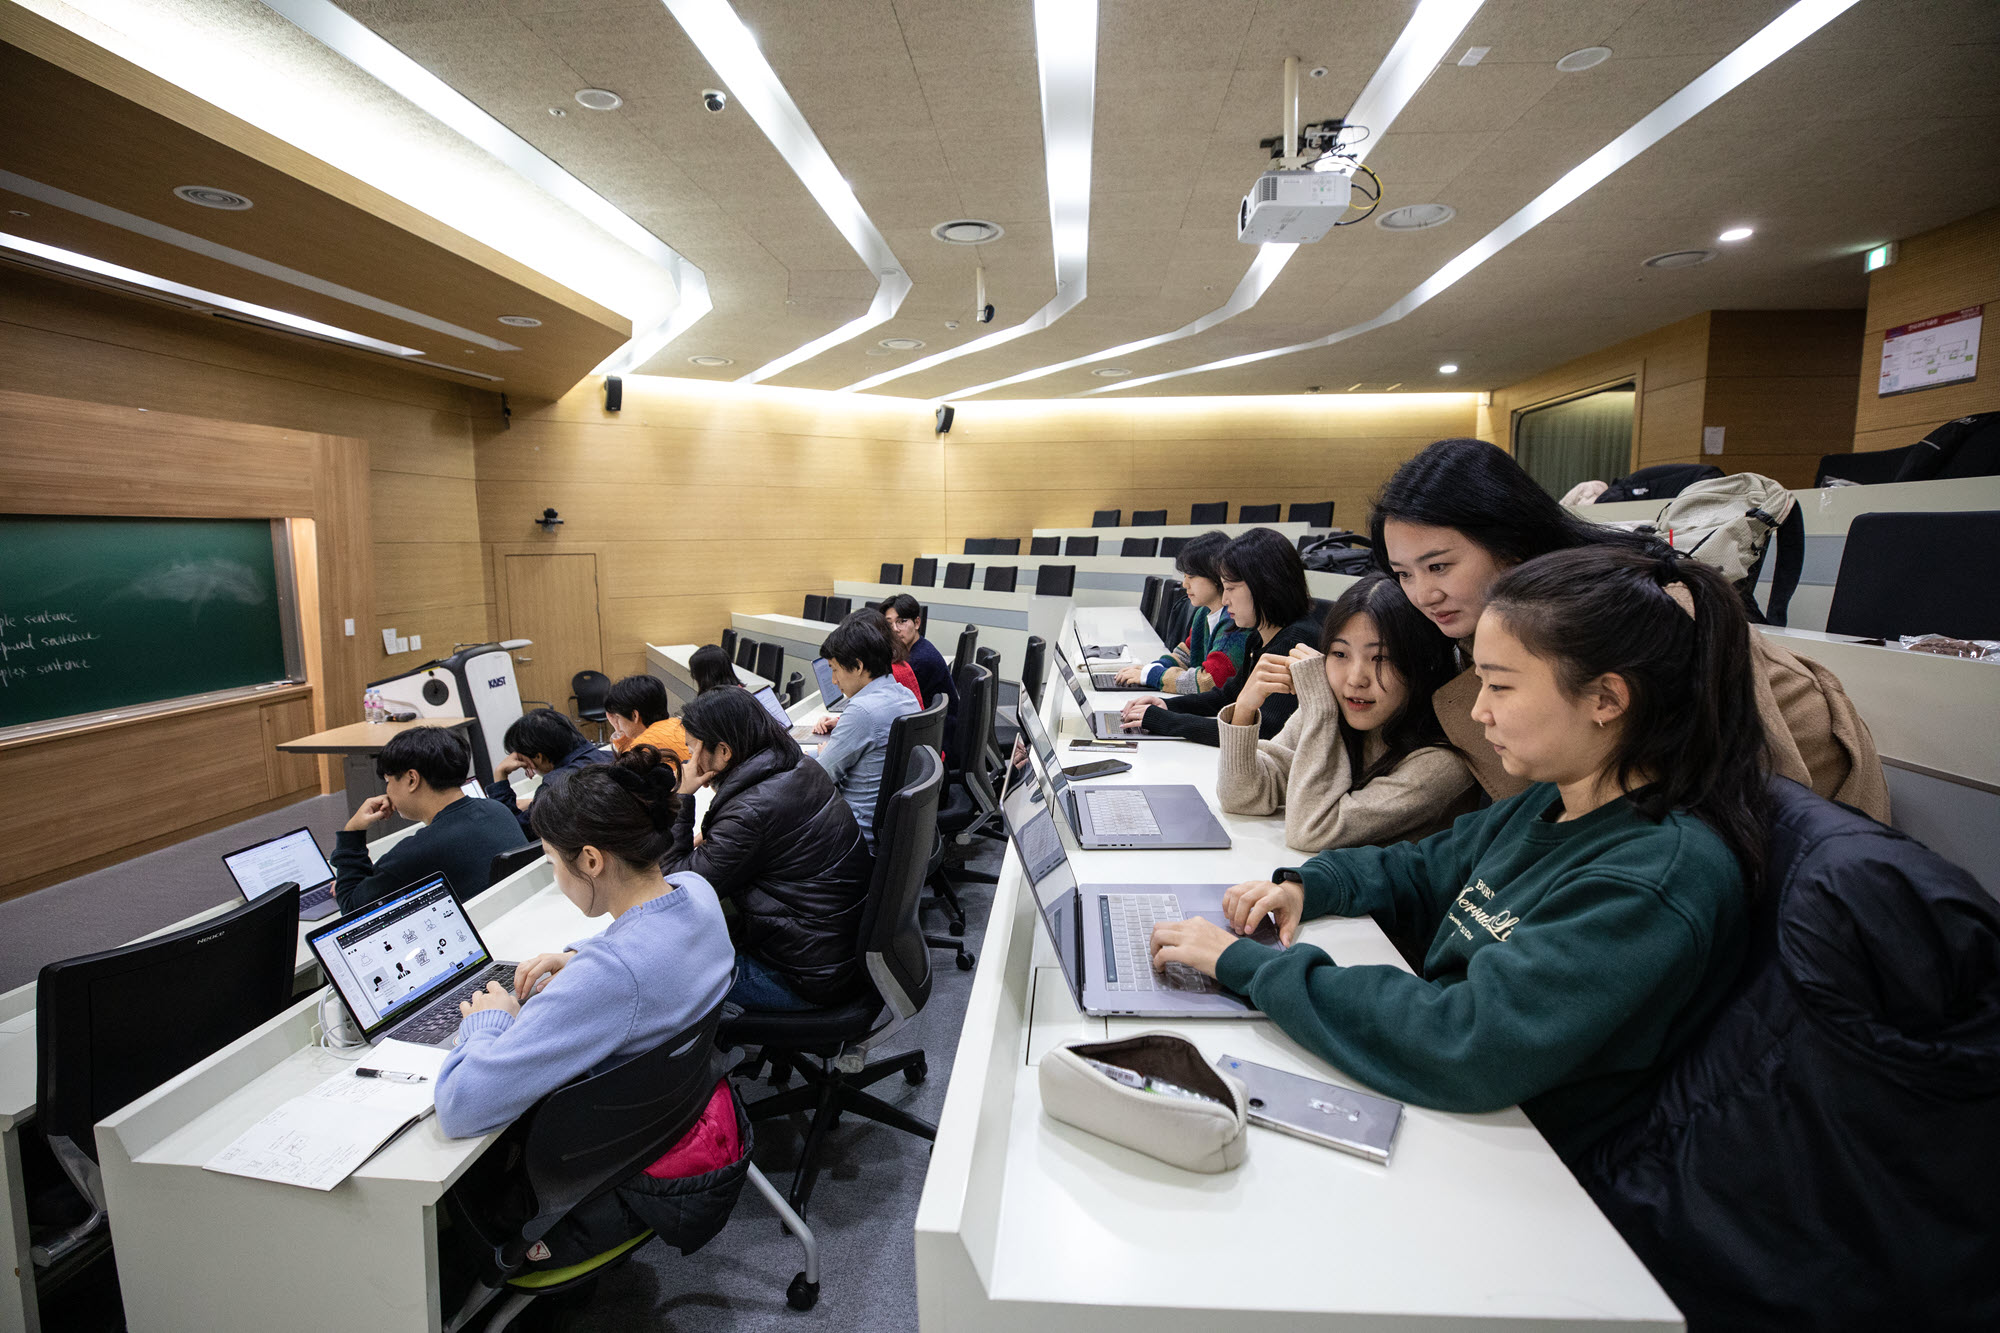 这是一张女教授与两名坐在电脑前的女学生在韩国高级科学技术学院演讲厅交谈的照片。 